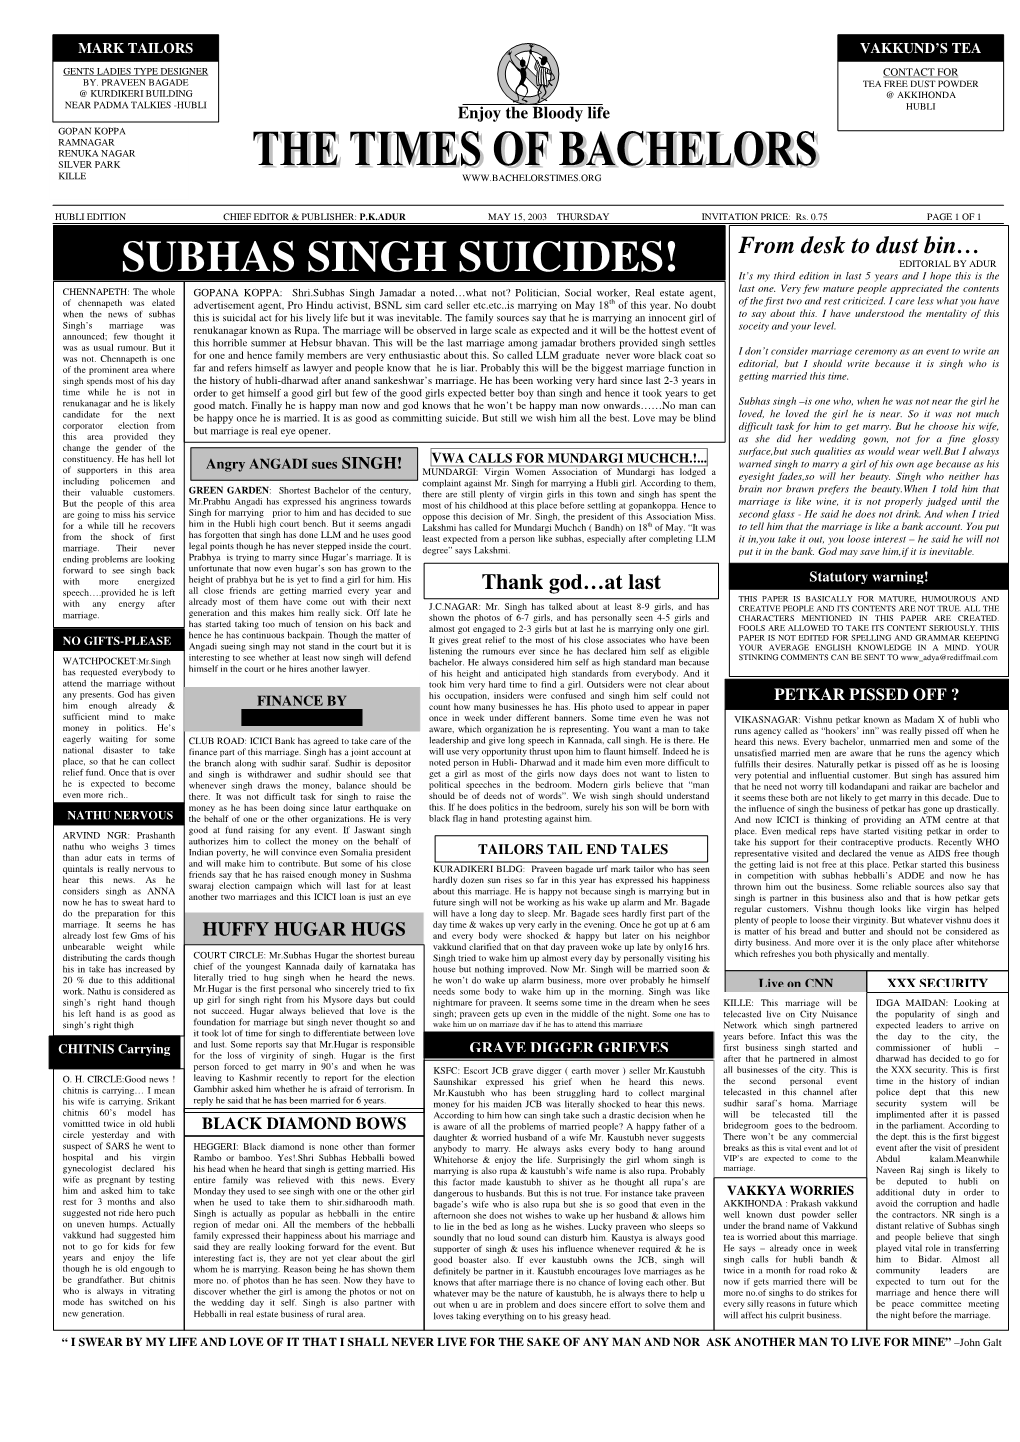 Subhas Singh Suicides!